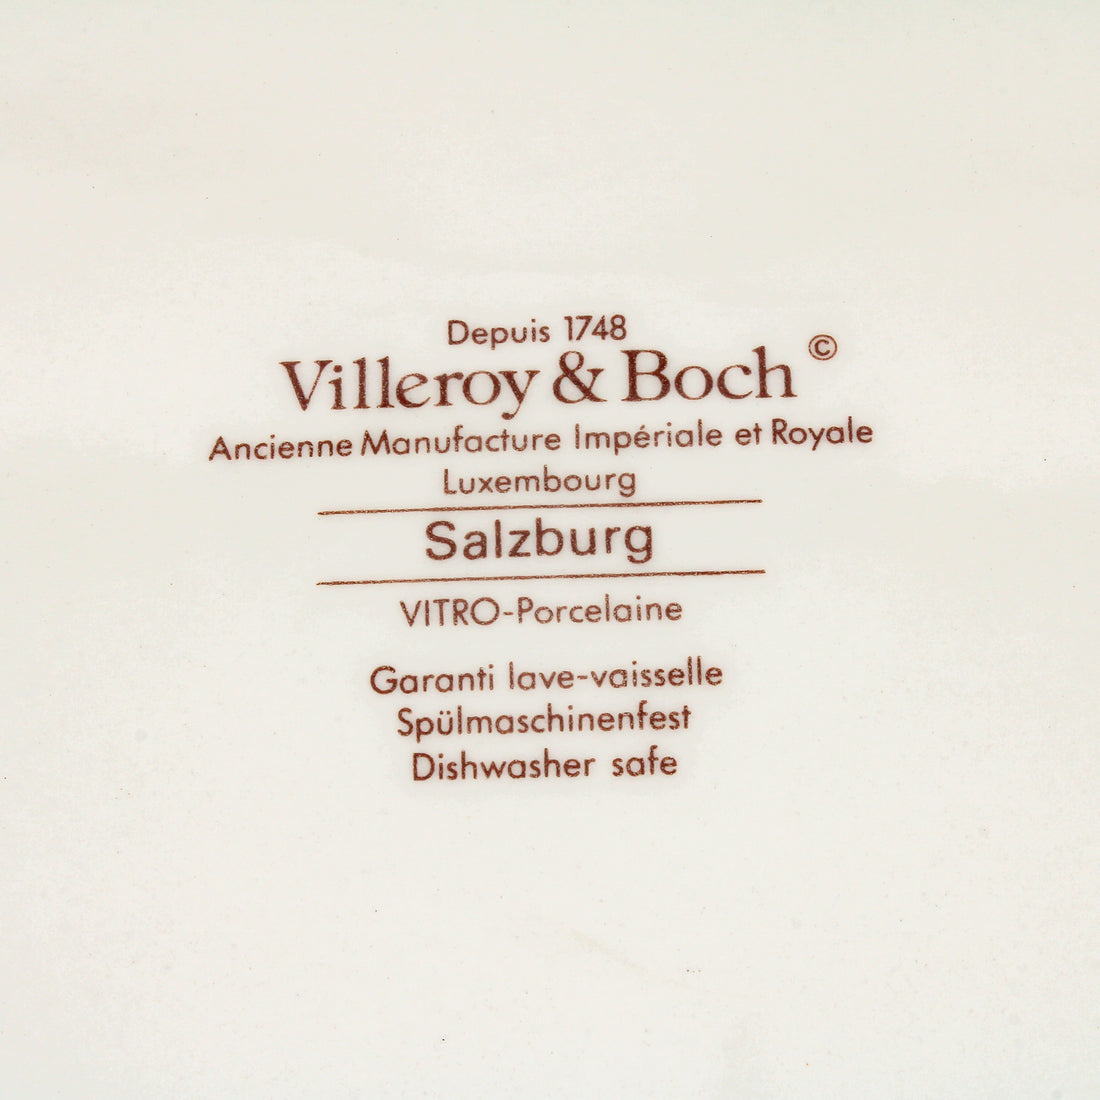 VILLEROY & BOCH Salzburg Charger/Platter